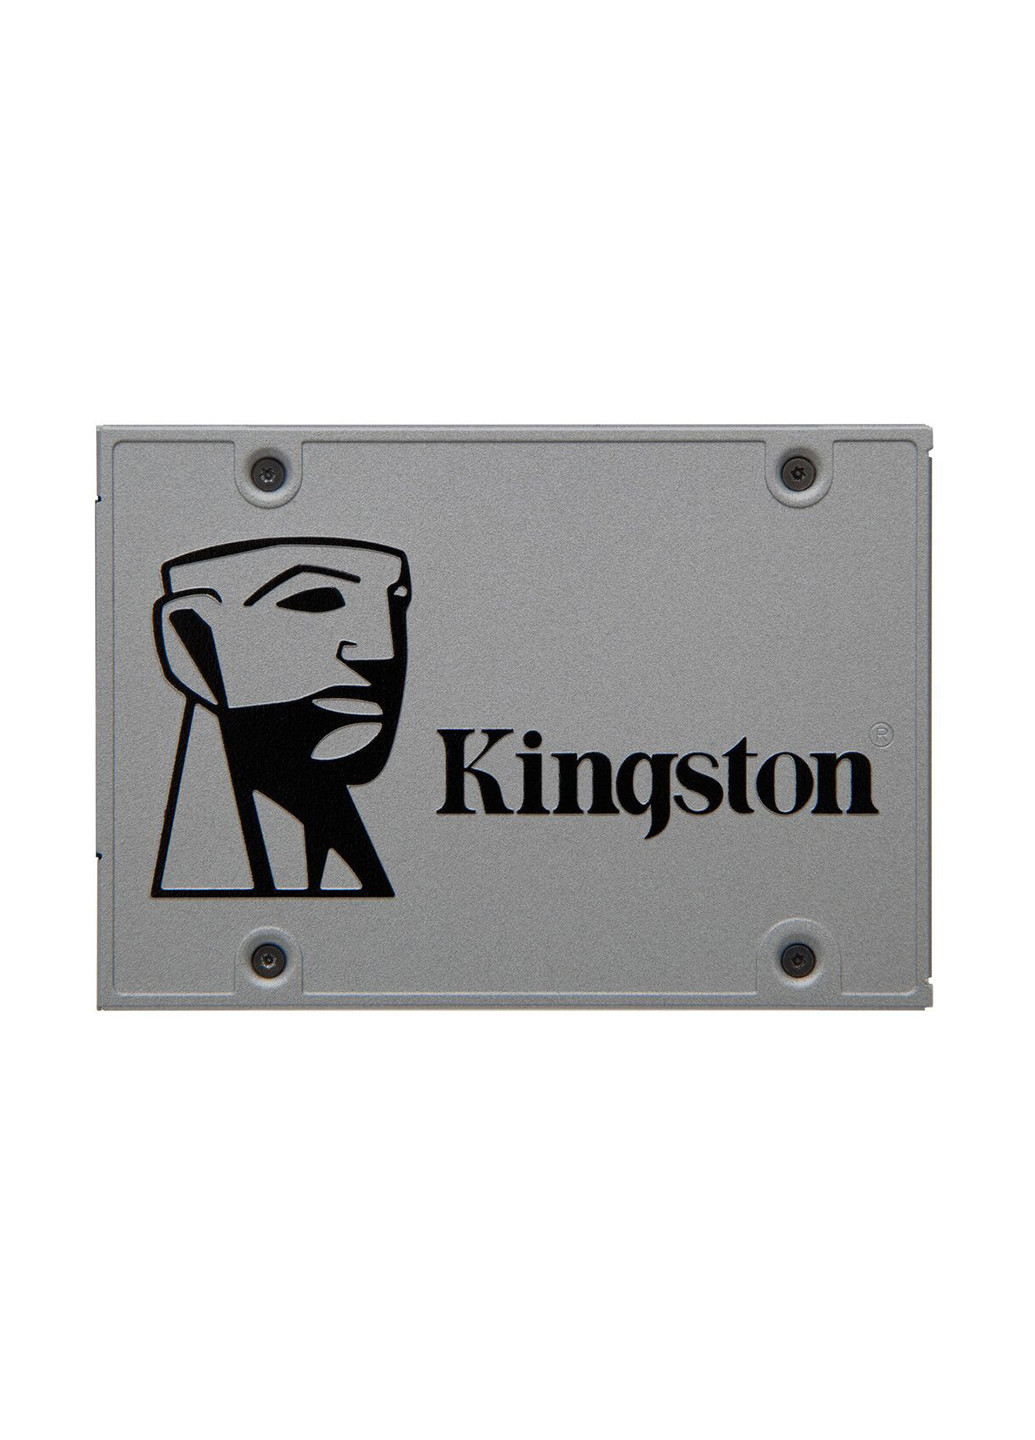 Внутренний SSD UV500 120GB 2.5" SATAIII TLC (SUV500/120G) Kingston Внутренний SSD Kingston UV500 120GB 2.5" SATAIII TLC (SUV500/120G) комбинированные